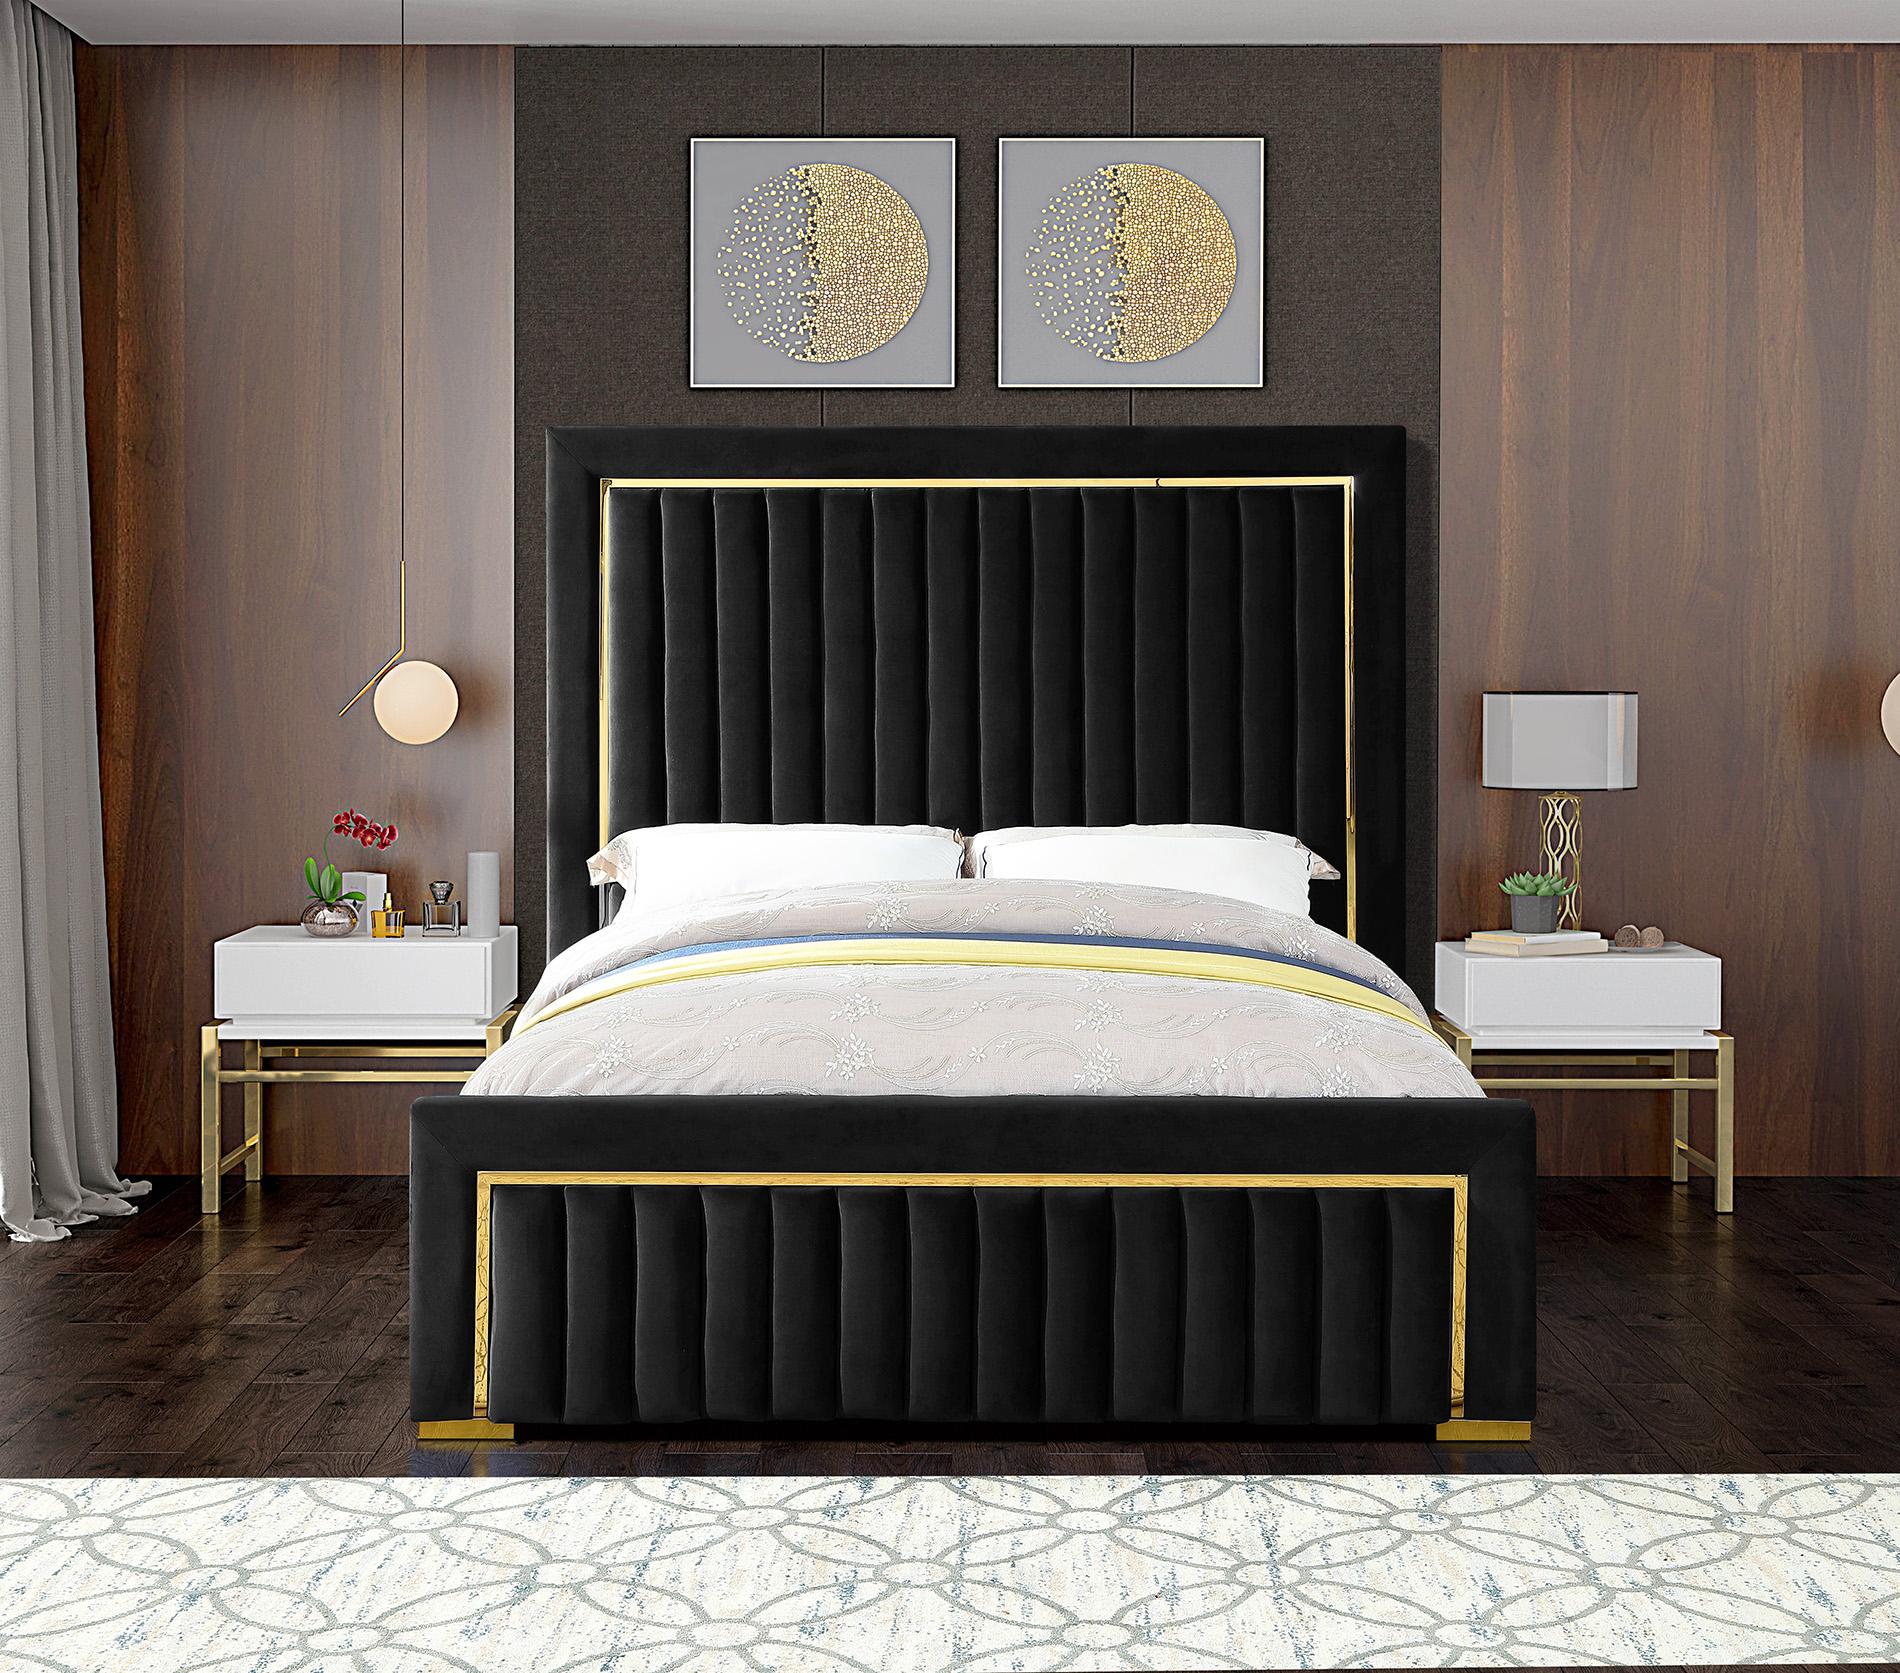 

    
Meridian Furniture DOLCE Black-Q Platform Bed Black DolceBlack-Q
